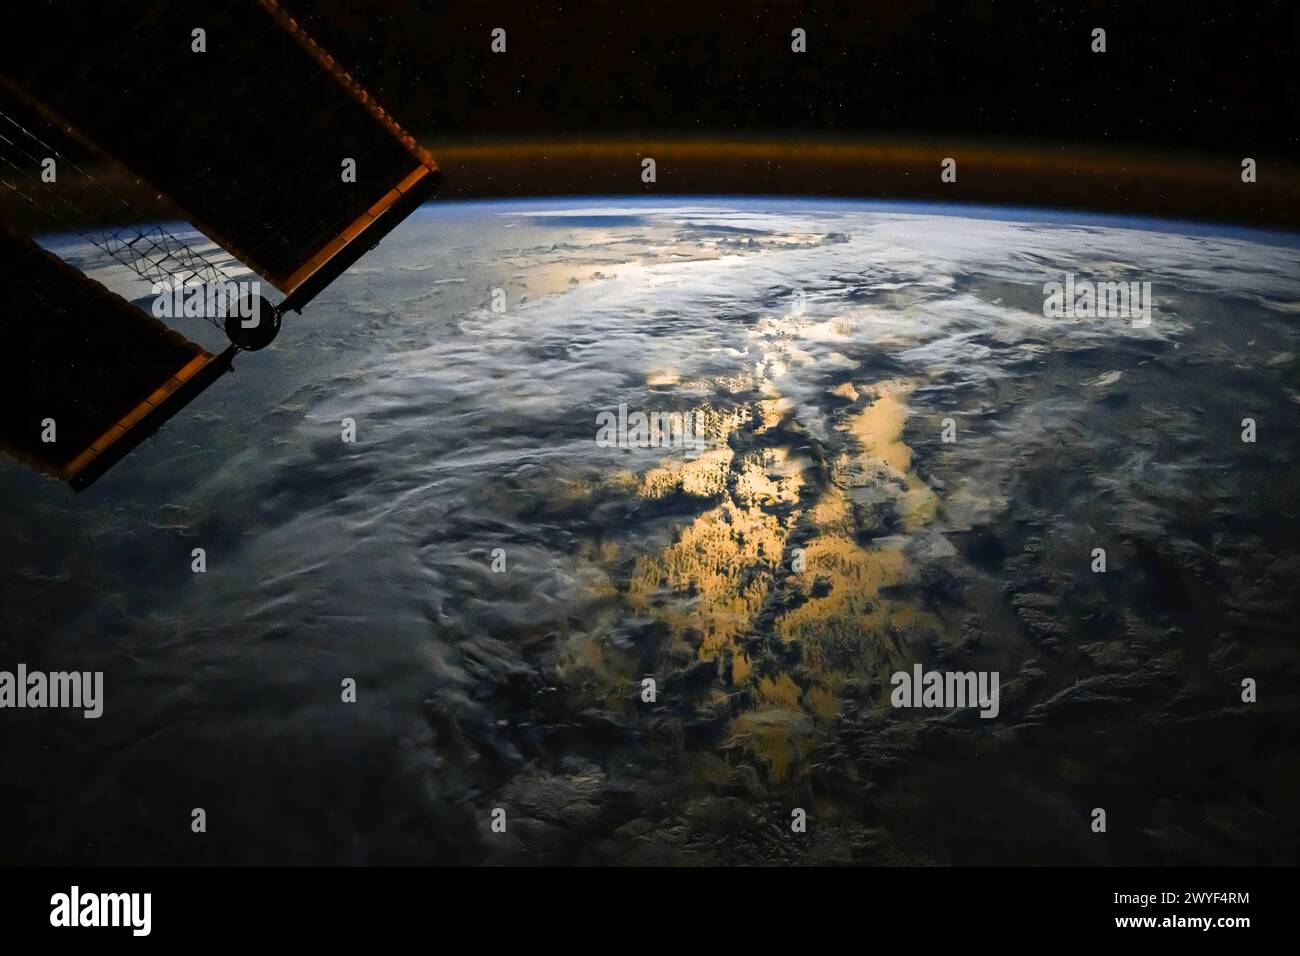 Lichtreflexion über dem Planeten Erde bei Nacht. Digitale Verbesserung eines von der NASA bereitgestellten Bildes Stockfoto